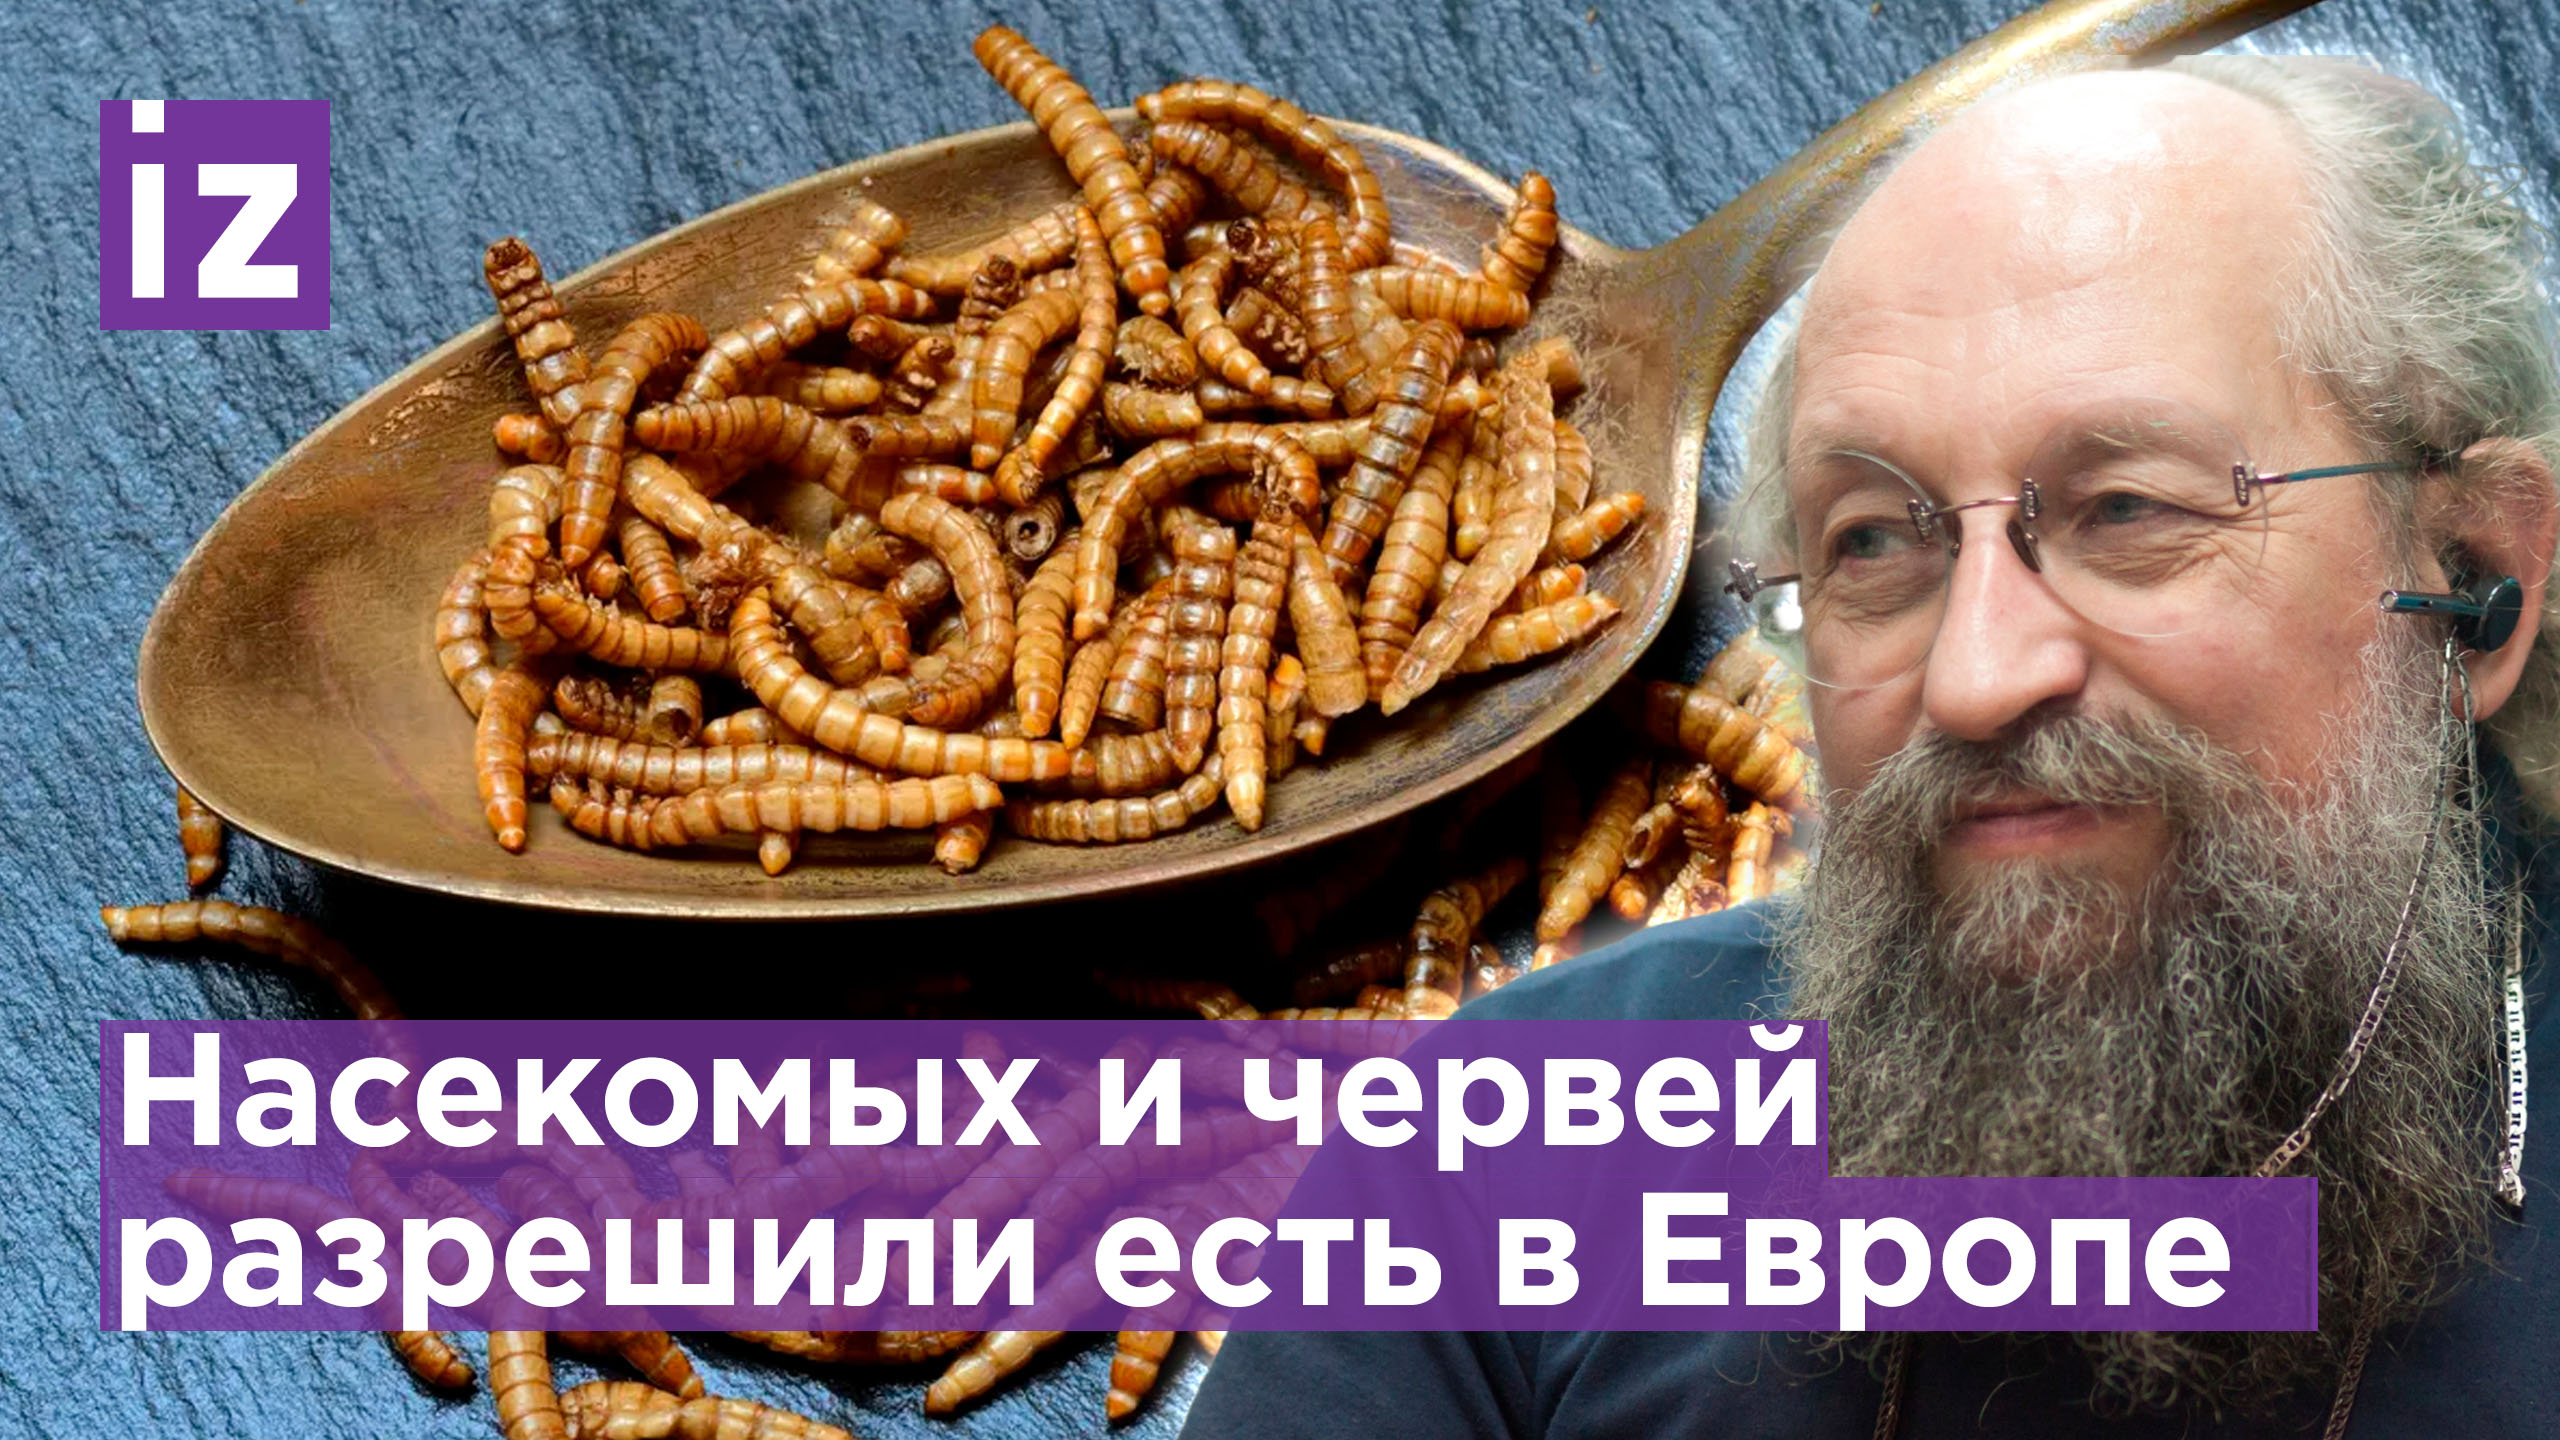 Сверчки, черви, саранча: новые Европейские «деликатесы» / «Открытым текстом» с Анатолием Вассерманом